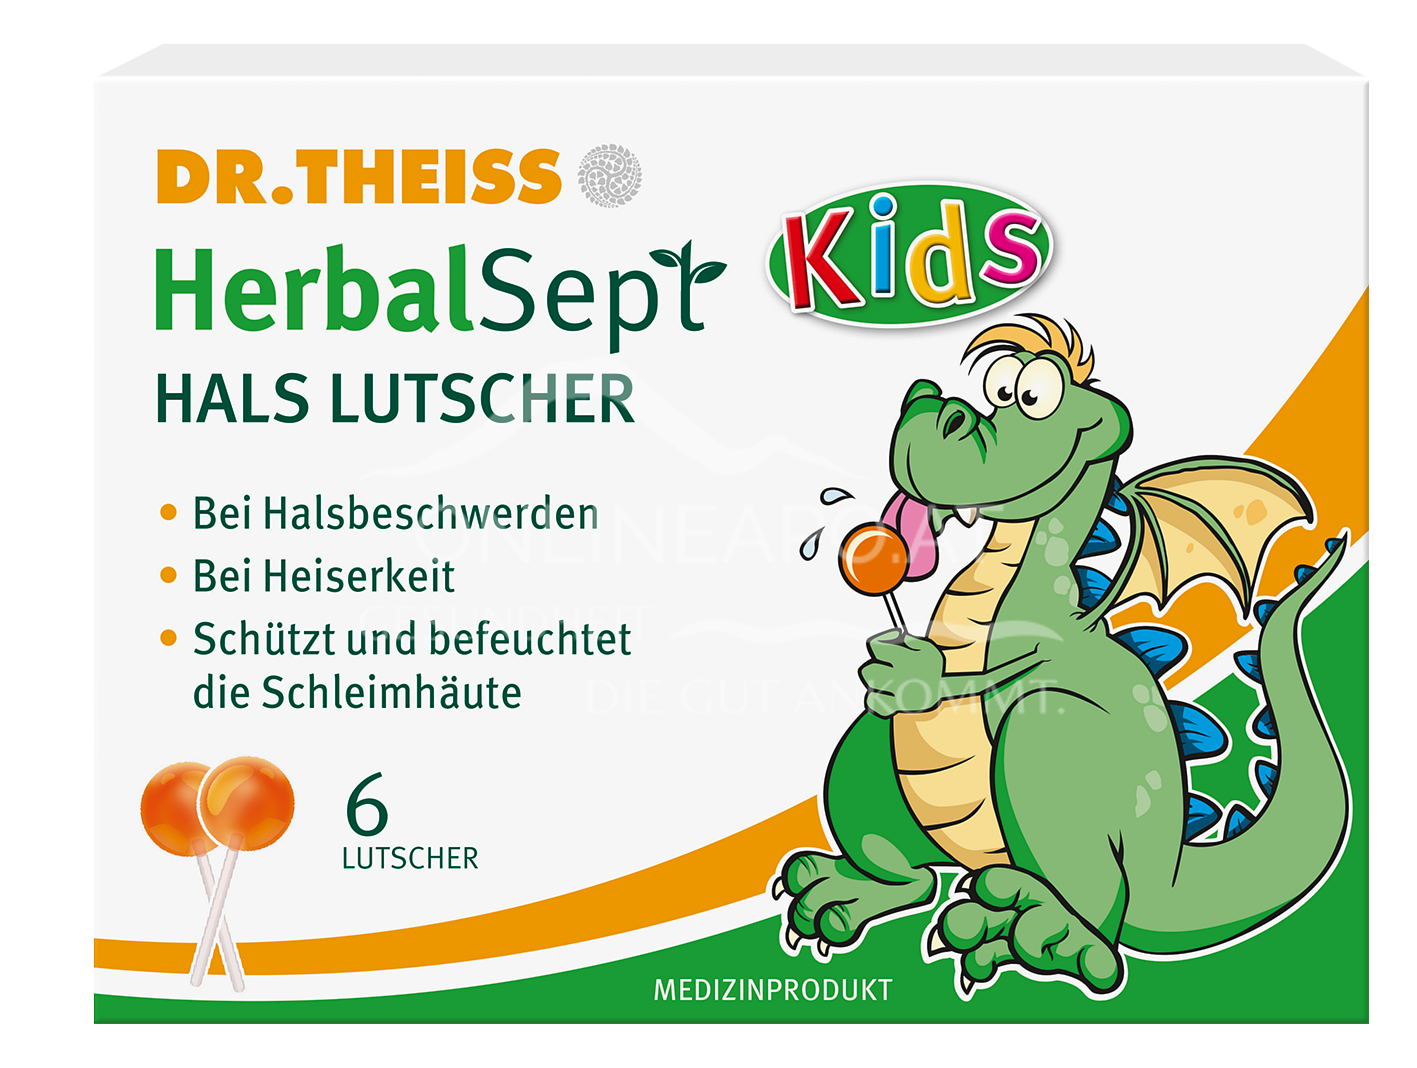 Dr. Theiss HerbalSept Hals Lutscher Kids